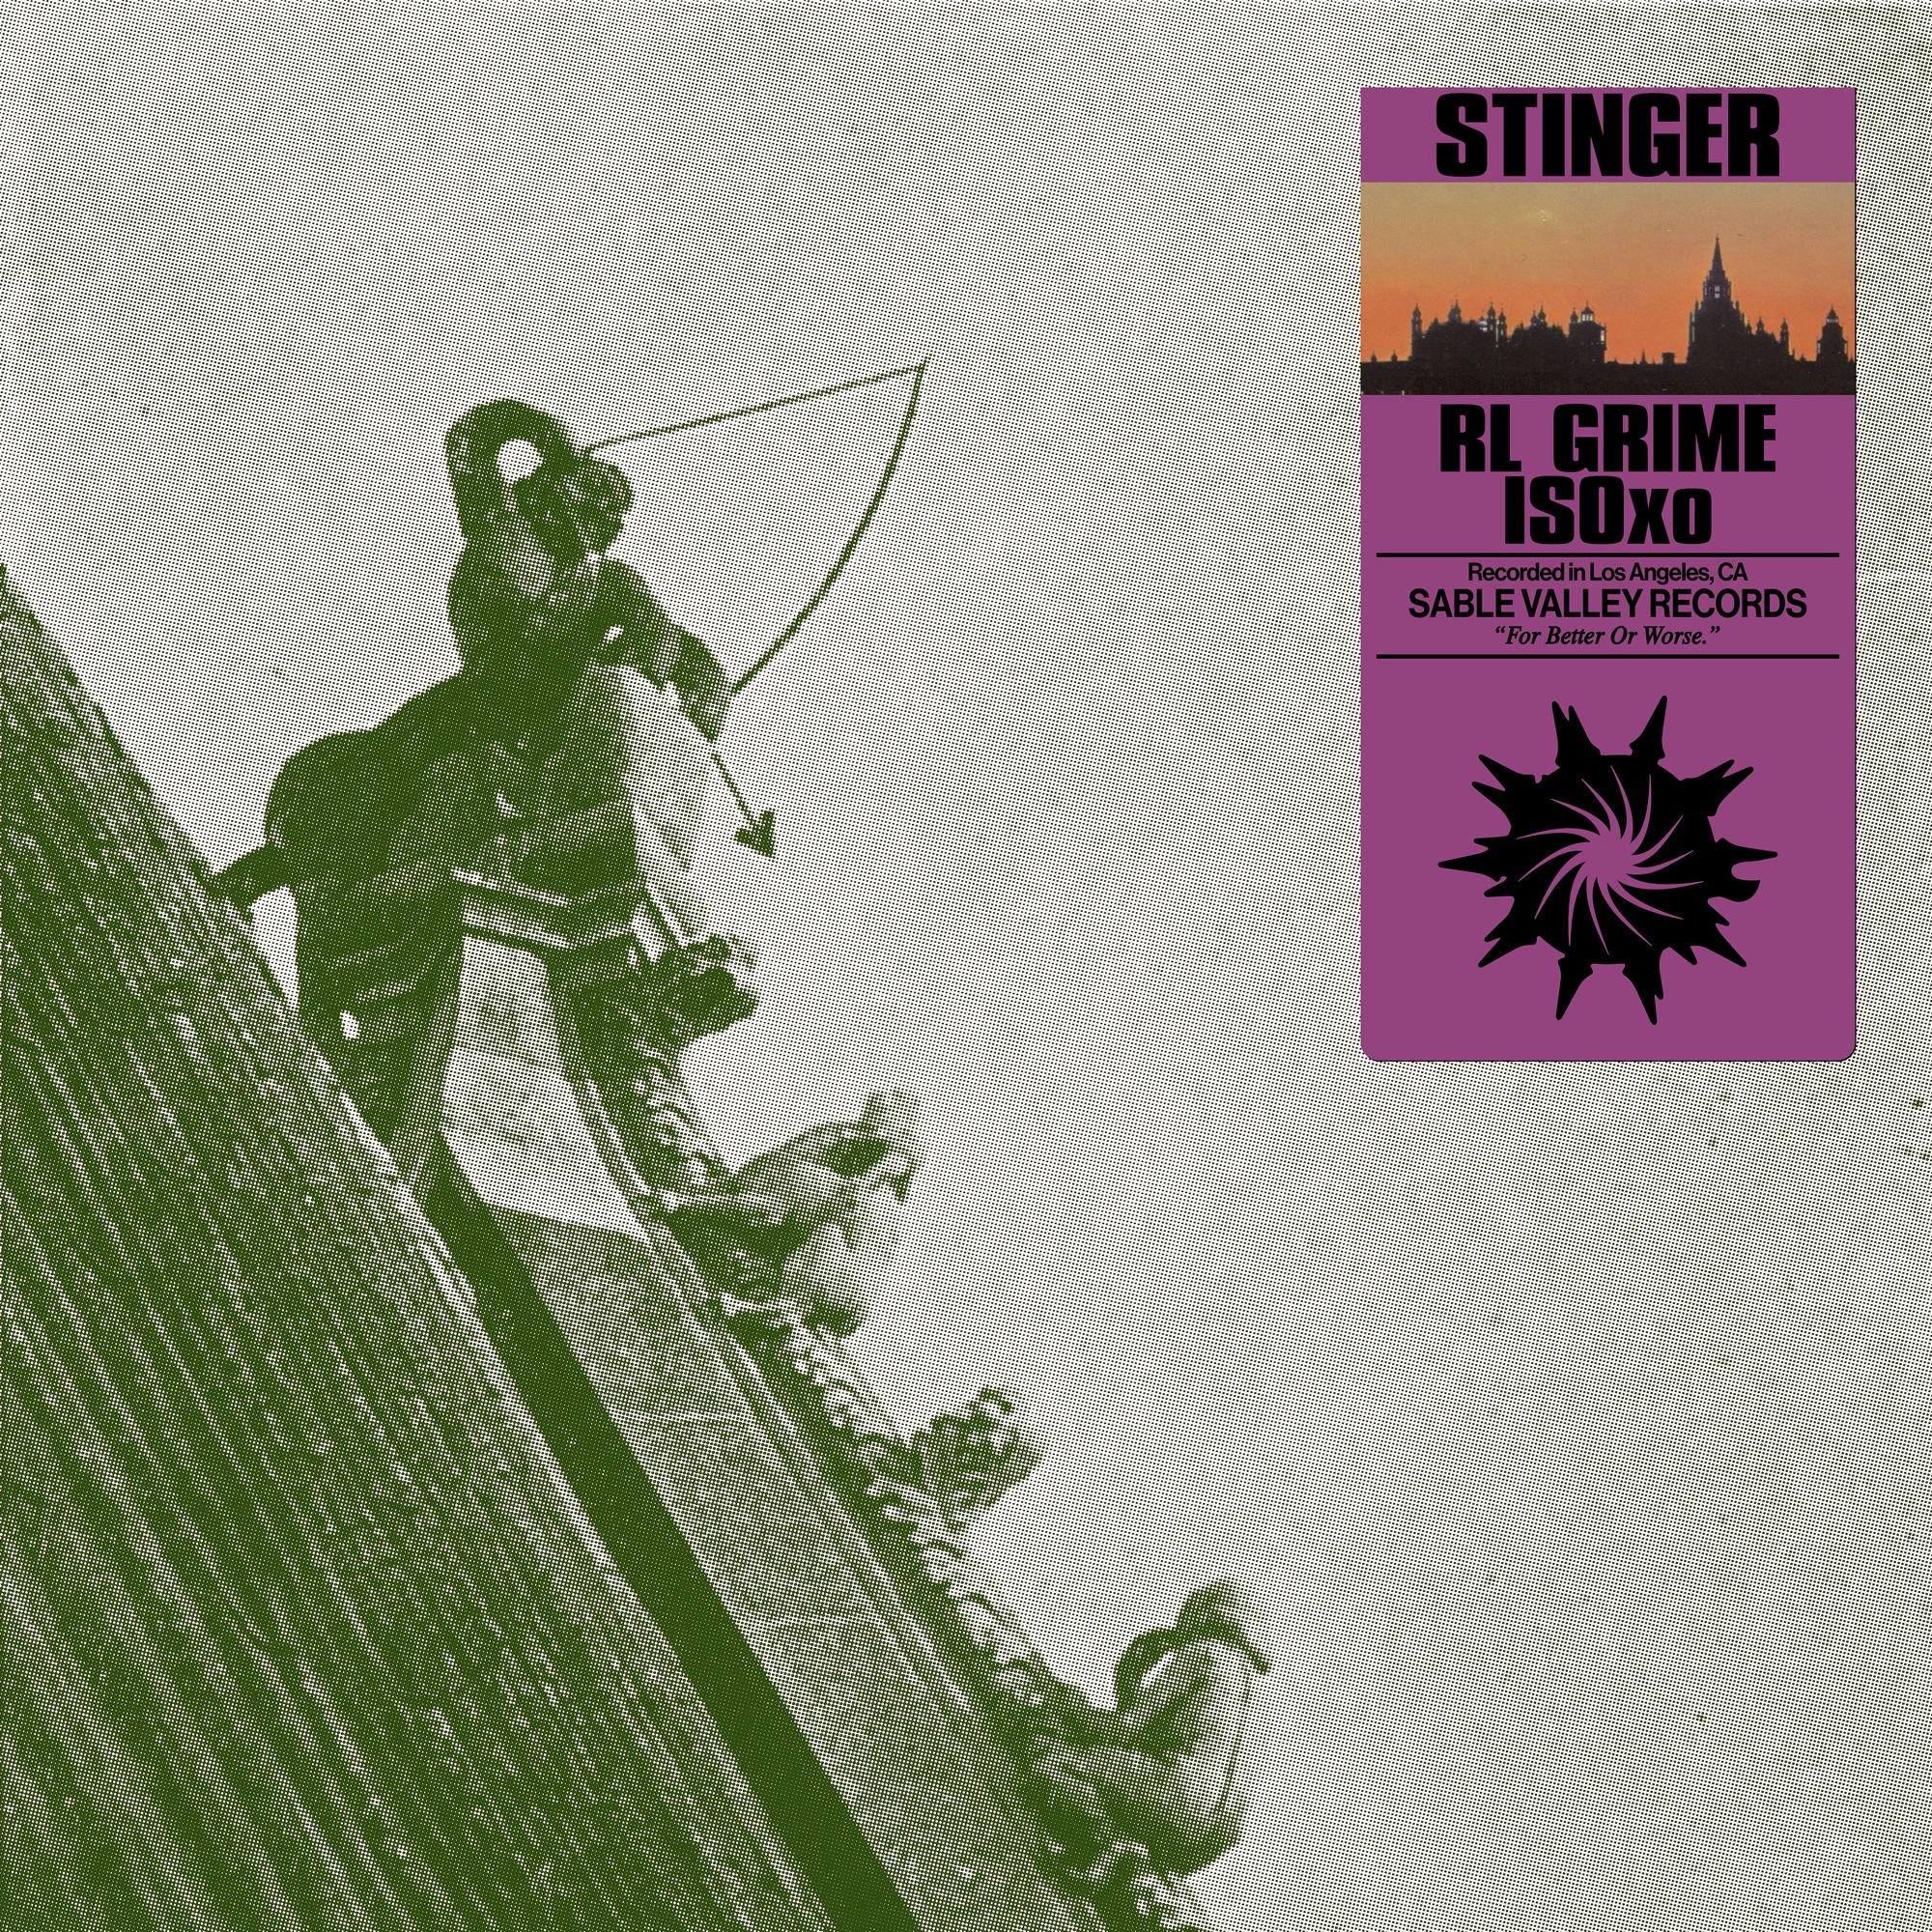 RL Grime & ISOxo - Stinger - Single